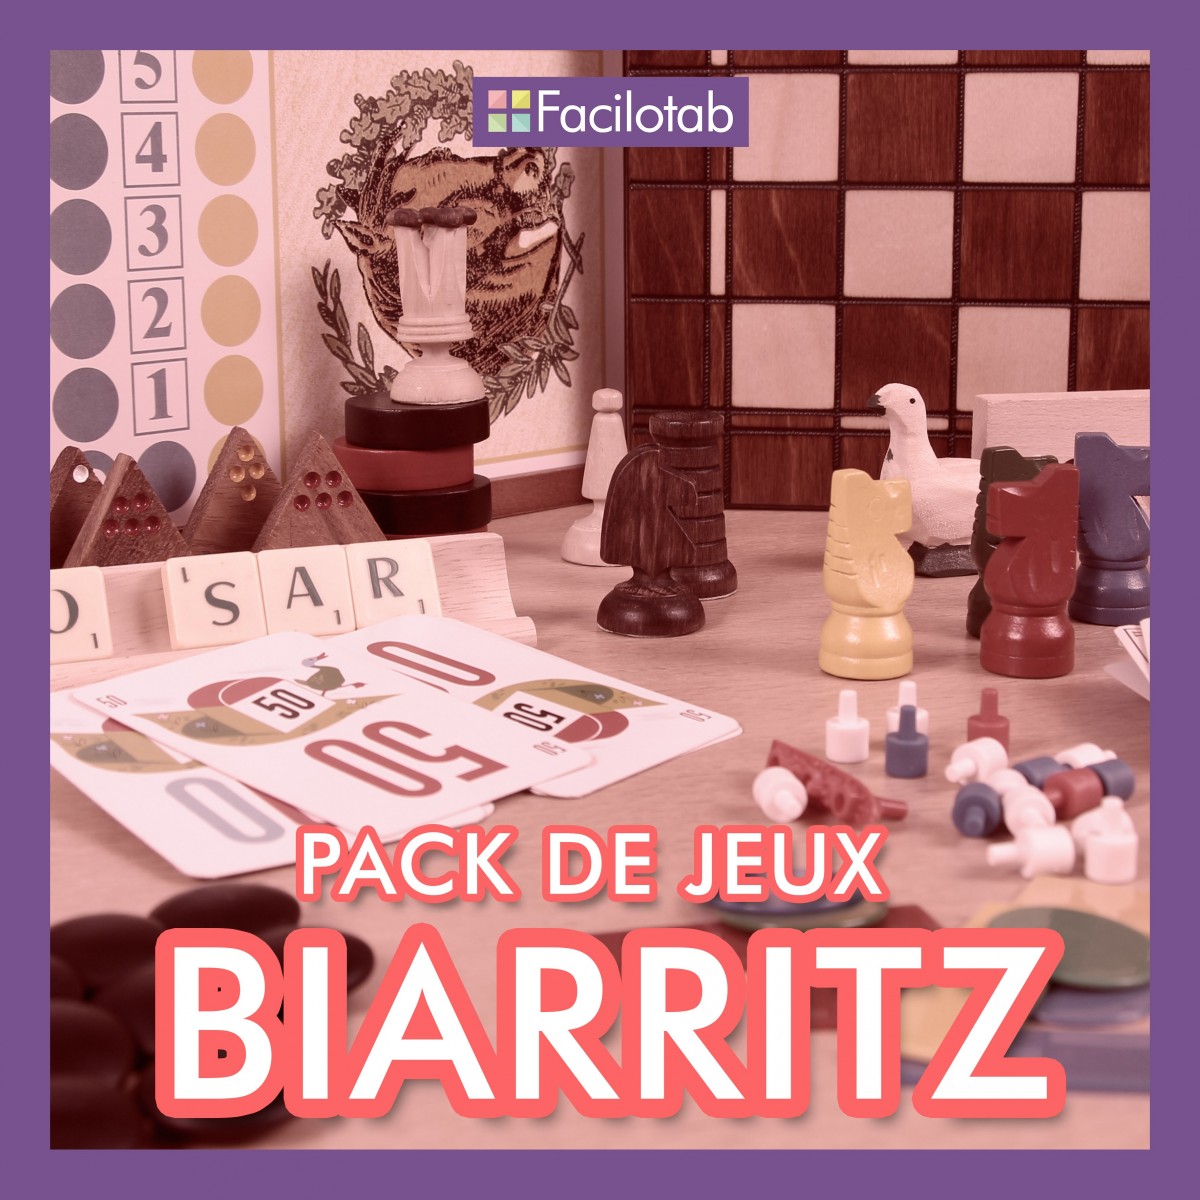 Pack de jeux "Biarritz"